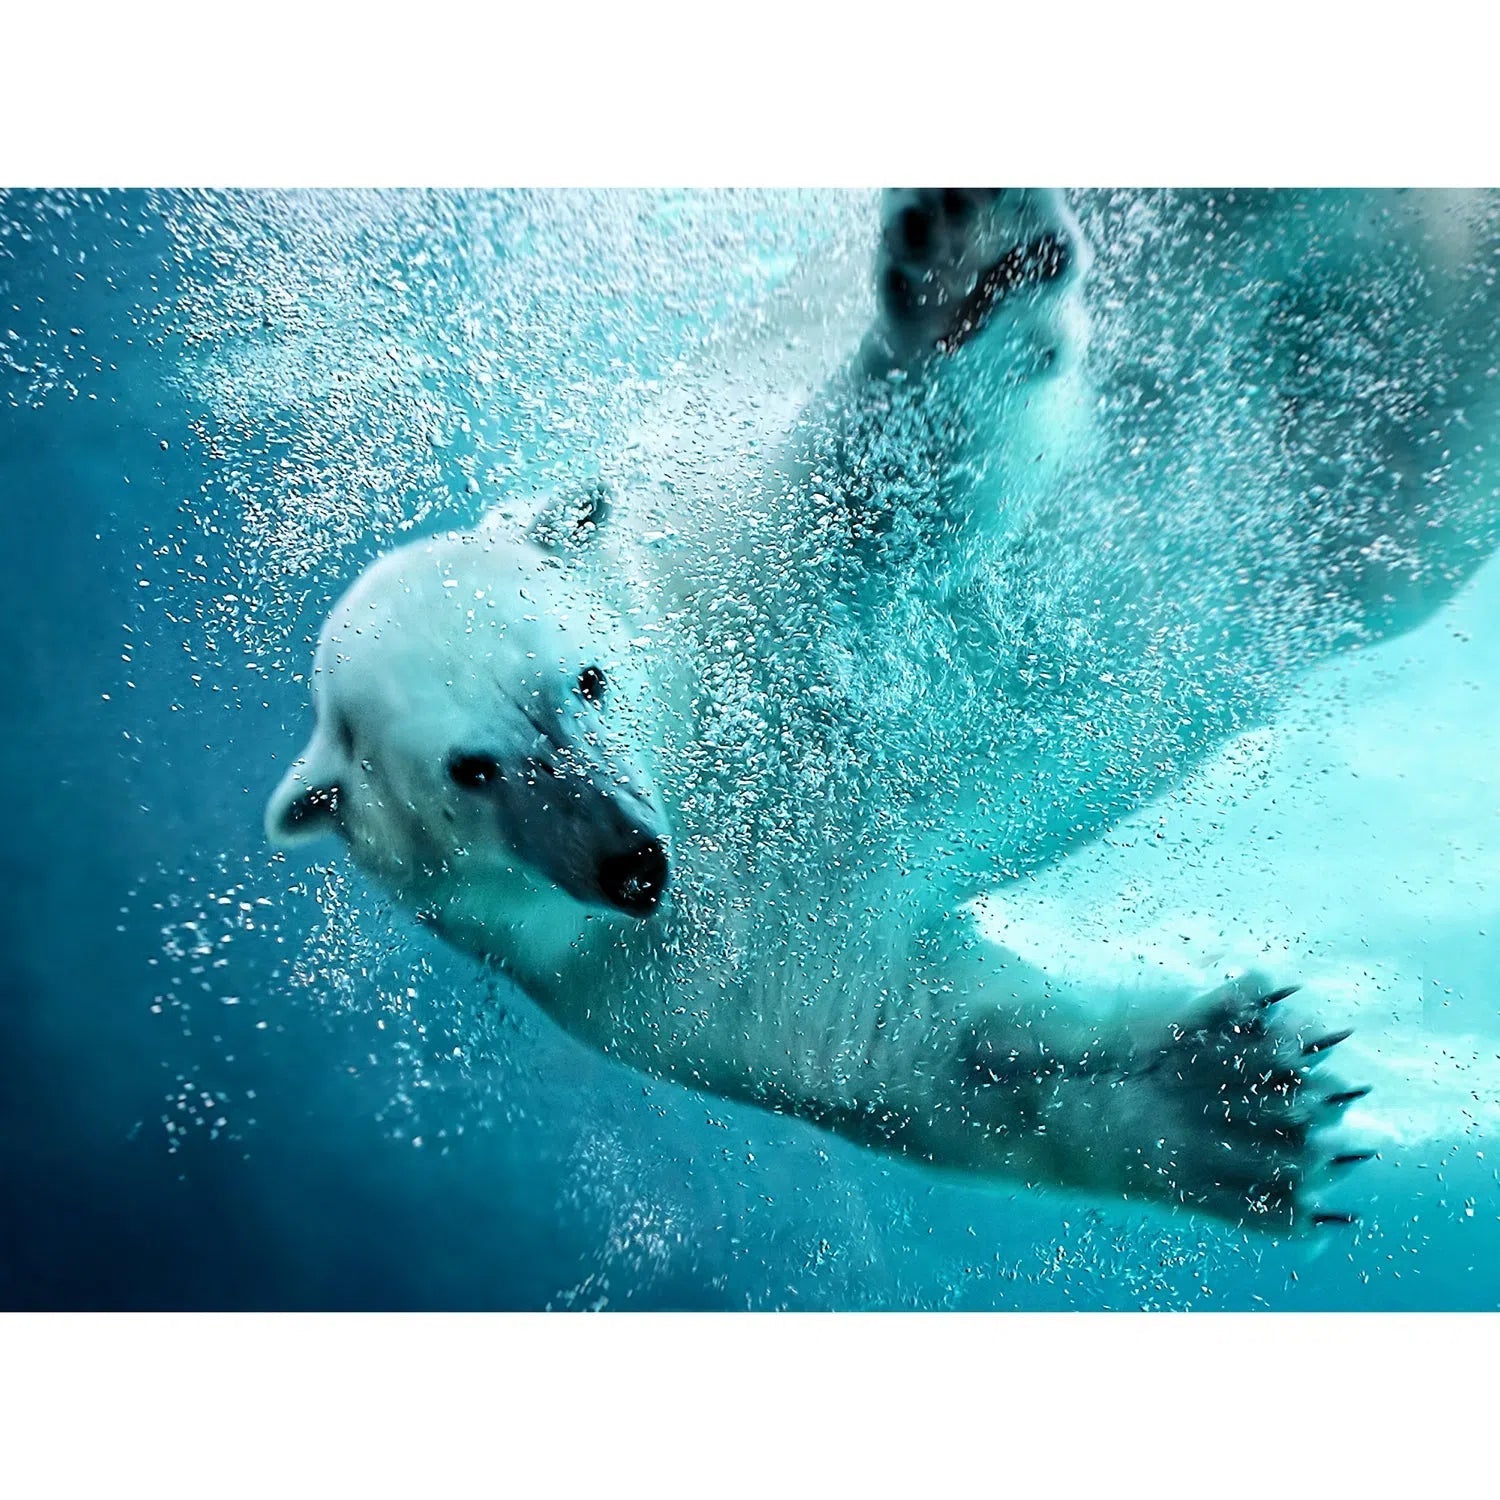 L'ours polaire en plongée-Imagesdartistes